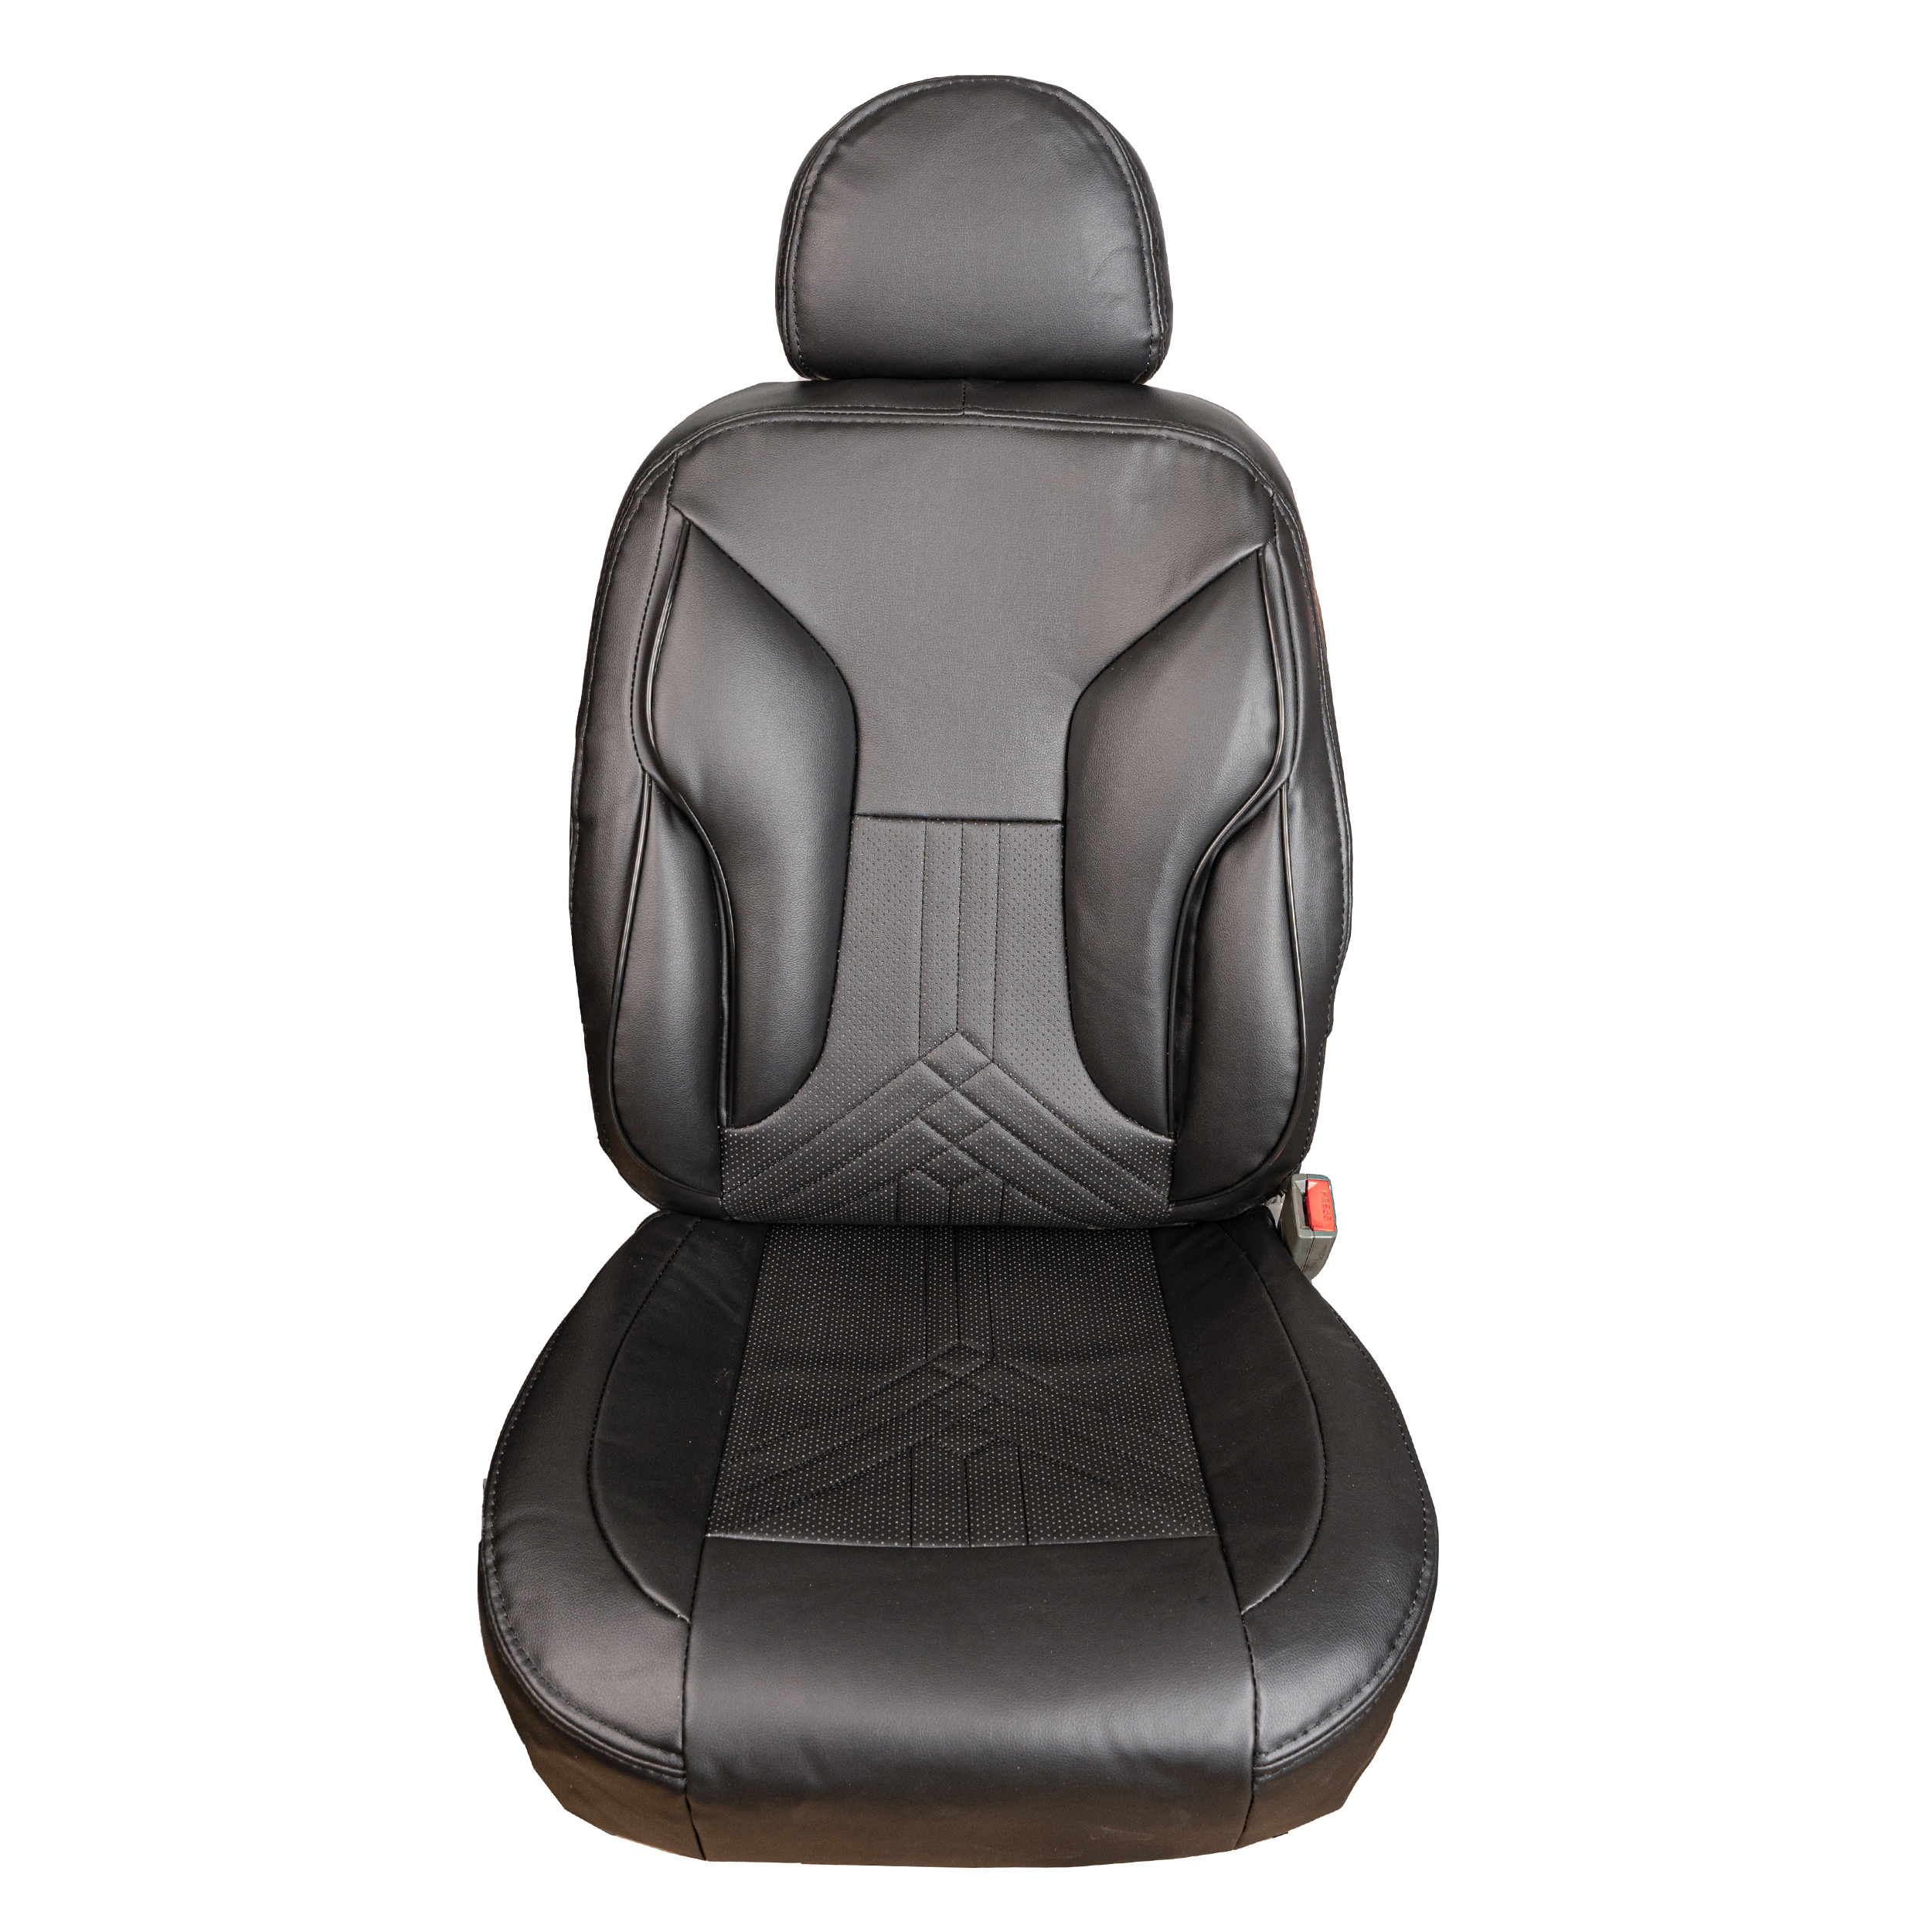 نکته خرید - قیمت روز روکش صندلی خودرو مدل سناتور کد 01 چرم سوزنی مناسب برای پژو 206 خرید